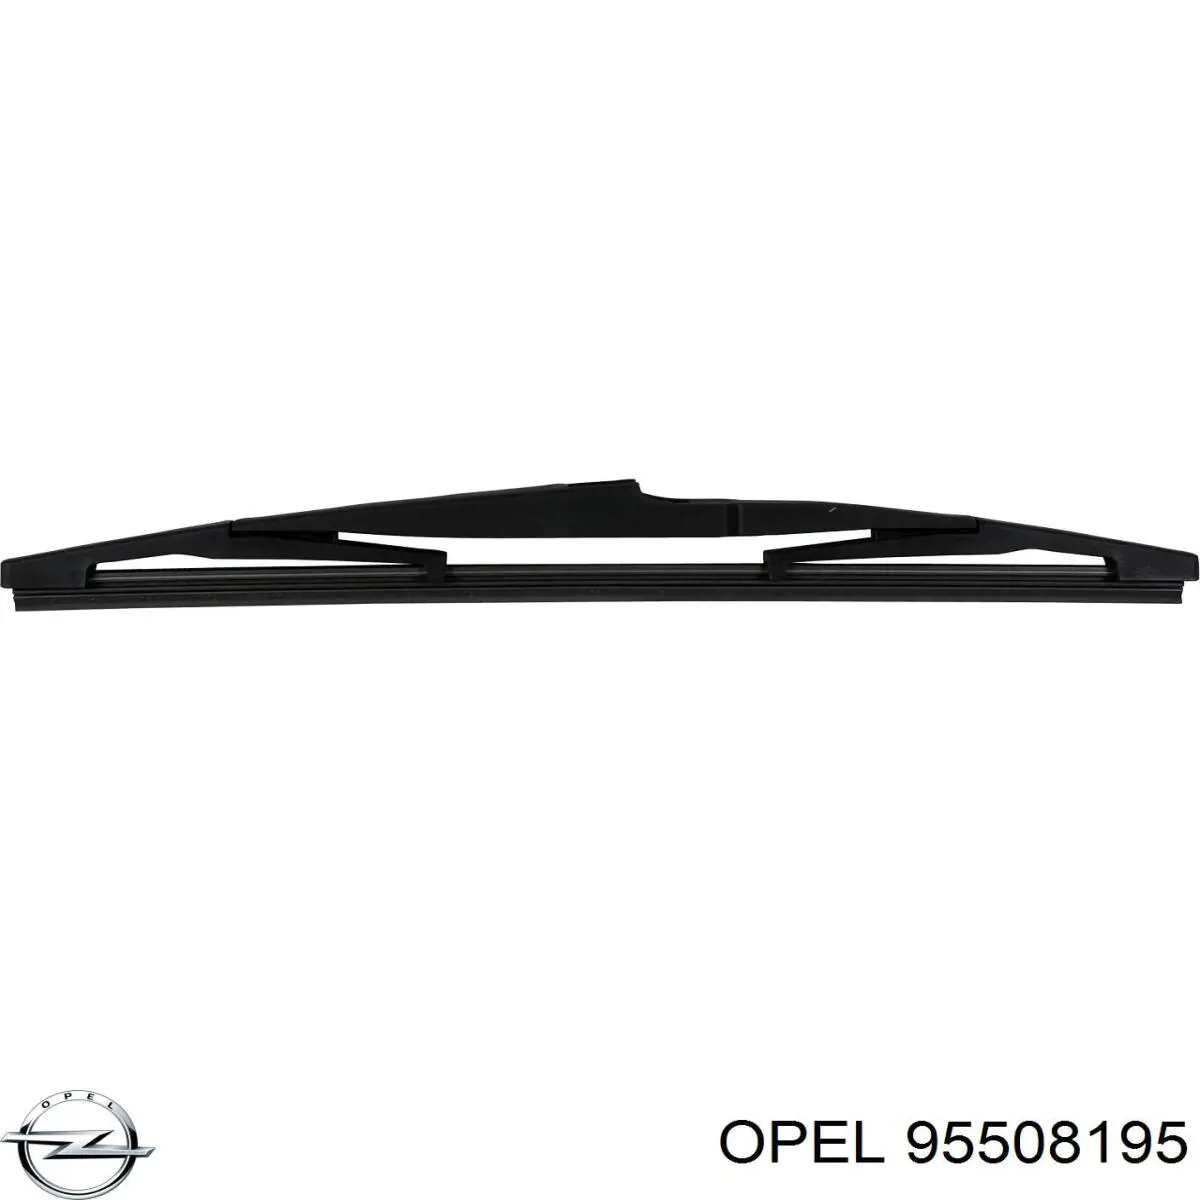 95508195 Opel limpiaparabrisas de luna delantera conductor